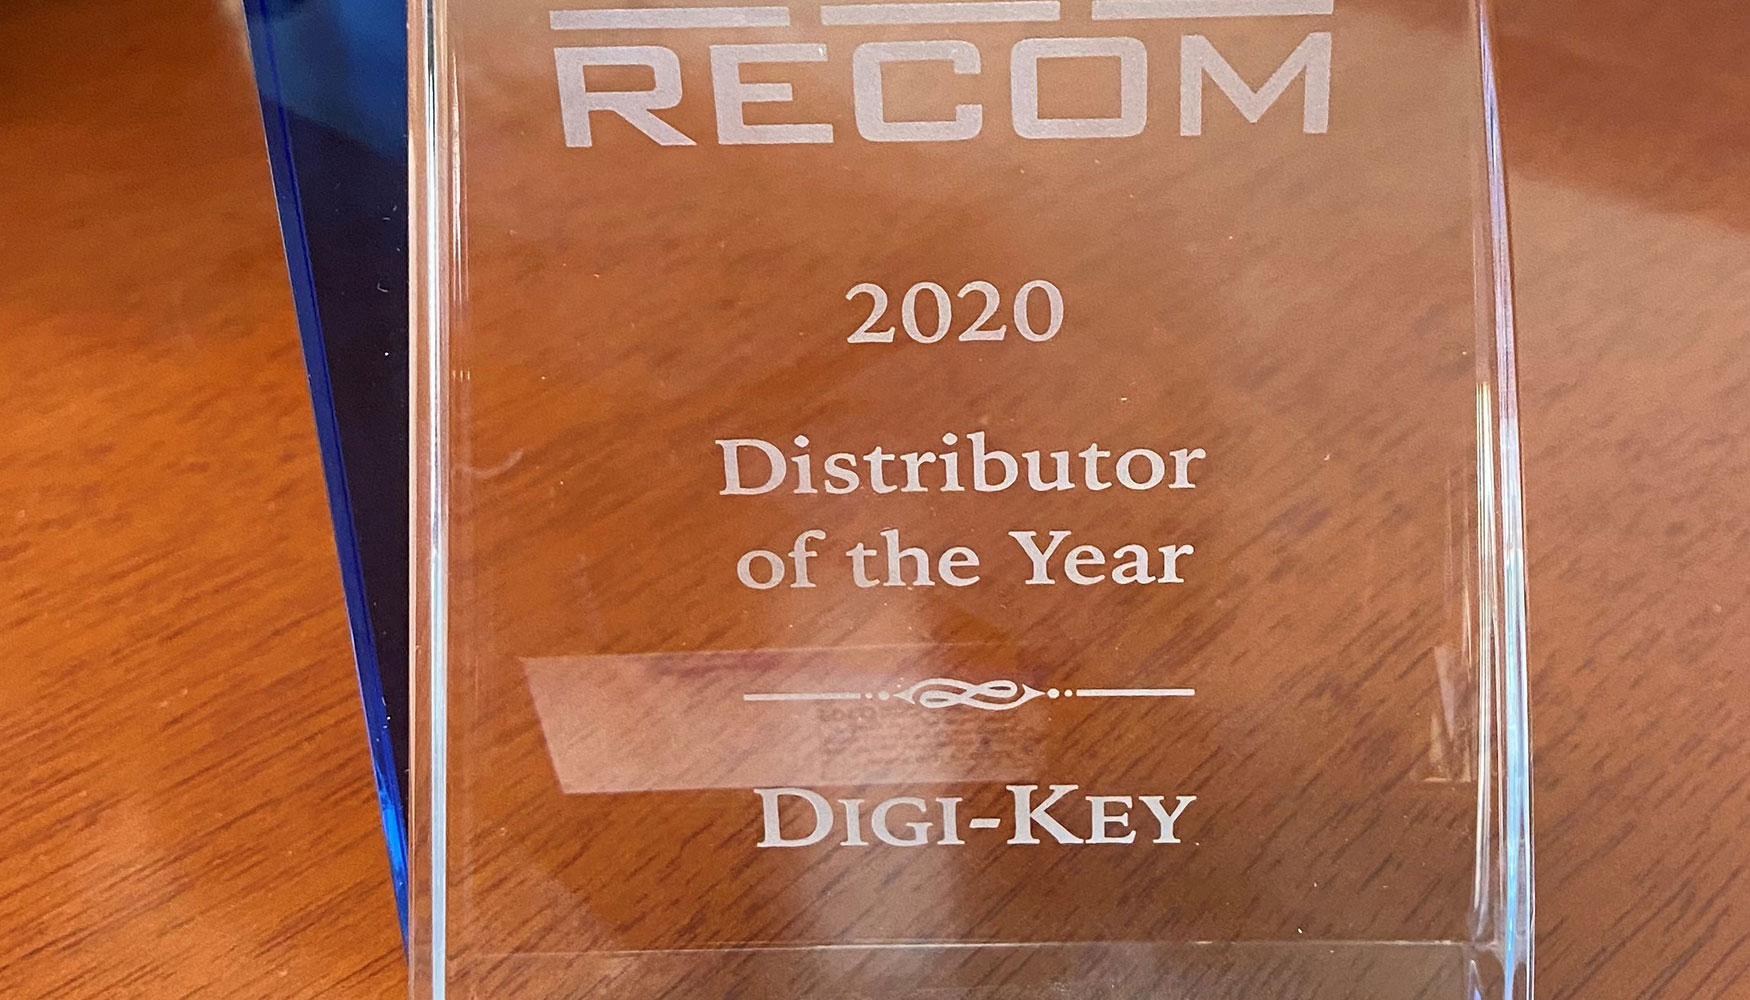 RECOM Power reconoce a Digi-Key Electronics con el premio al Distribuidor del Ao 2020